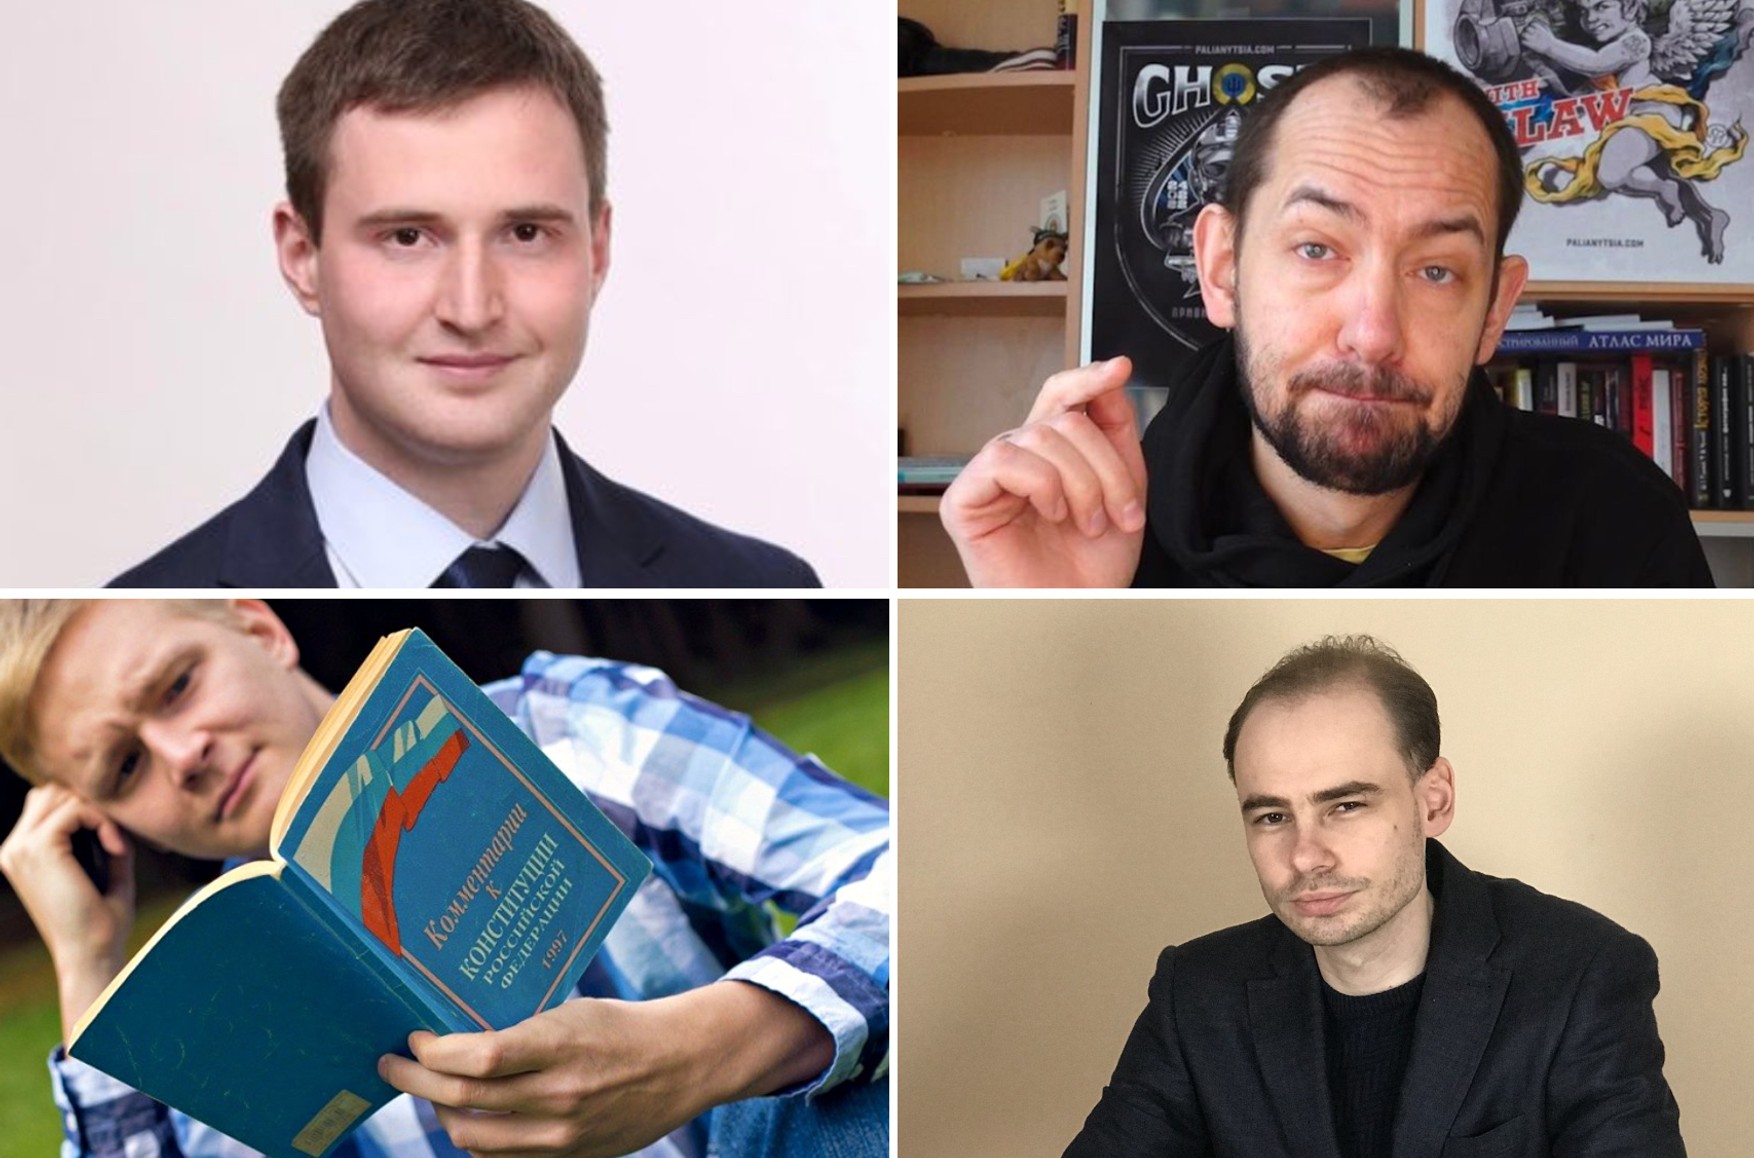 Минюст объявил «иноагентами» четырех человек. В том числе журналиста Цимбалюка и главу «Альянса учителей» Кена